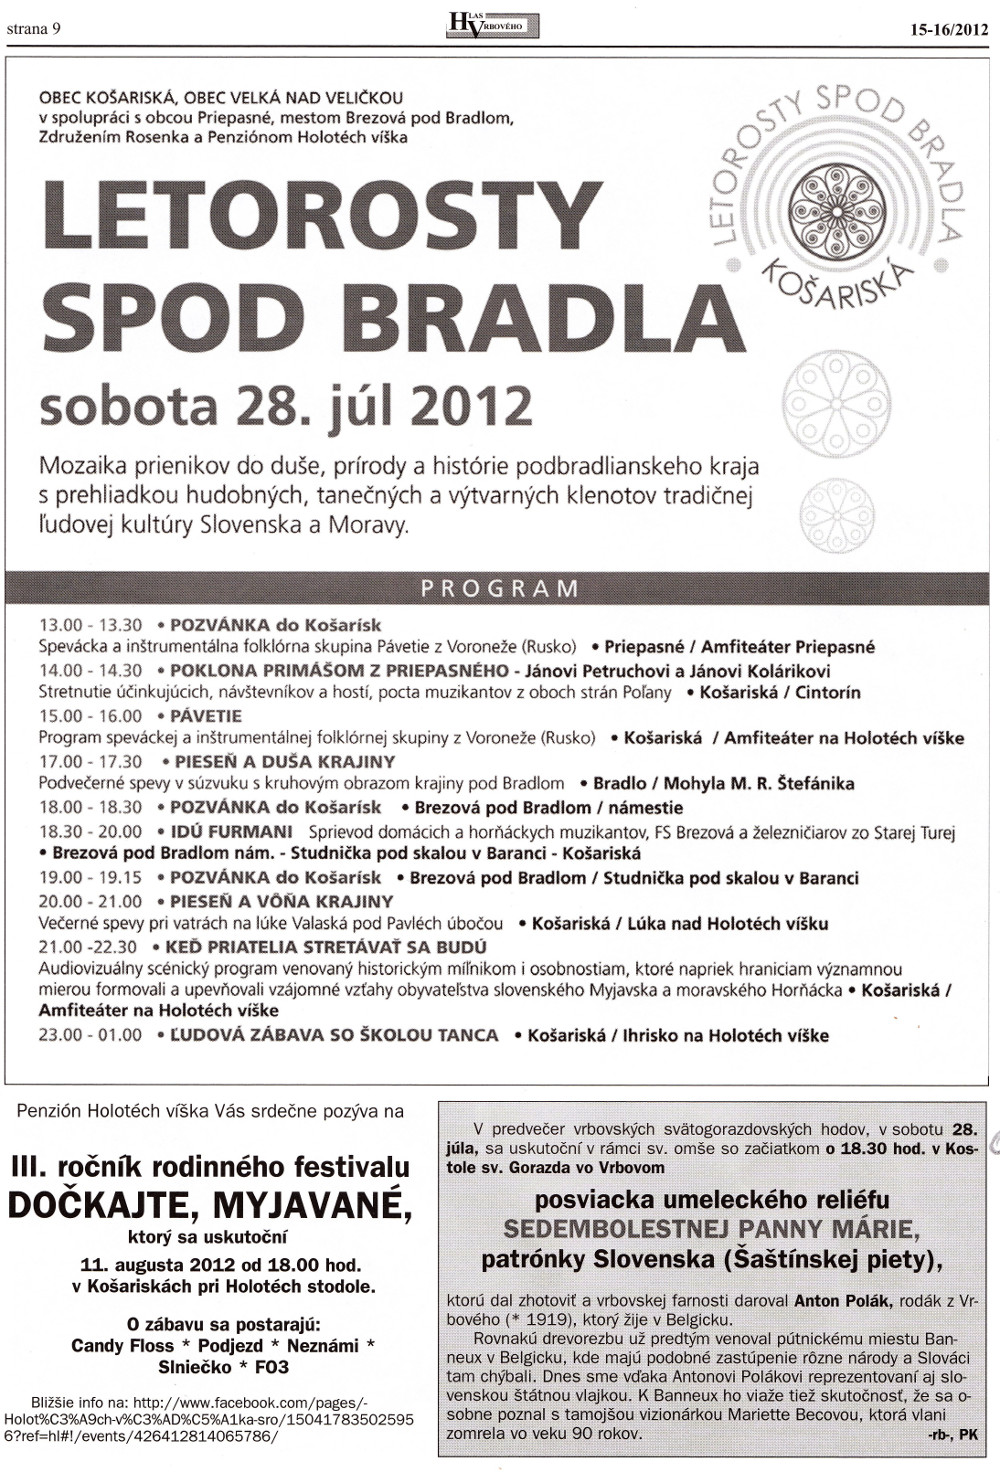 Hlas Vrbového 15-16/2012, strana 9